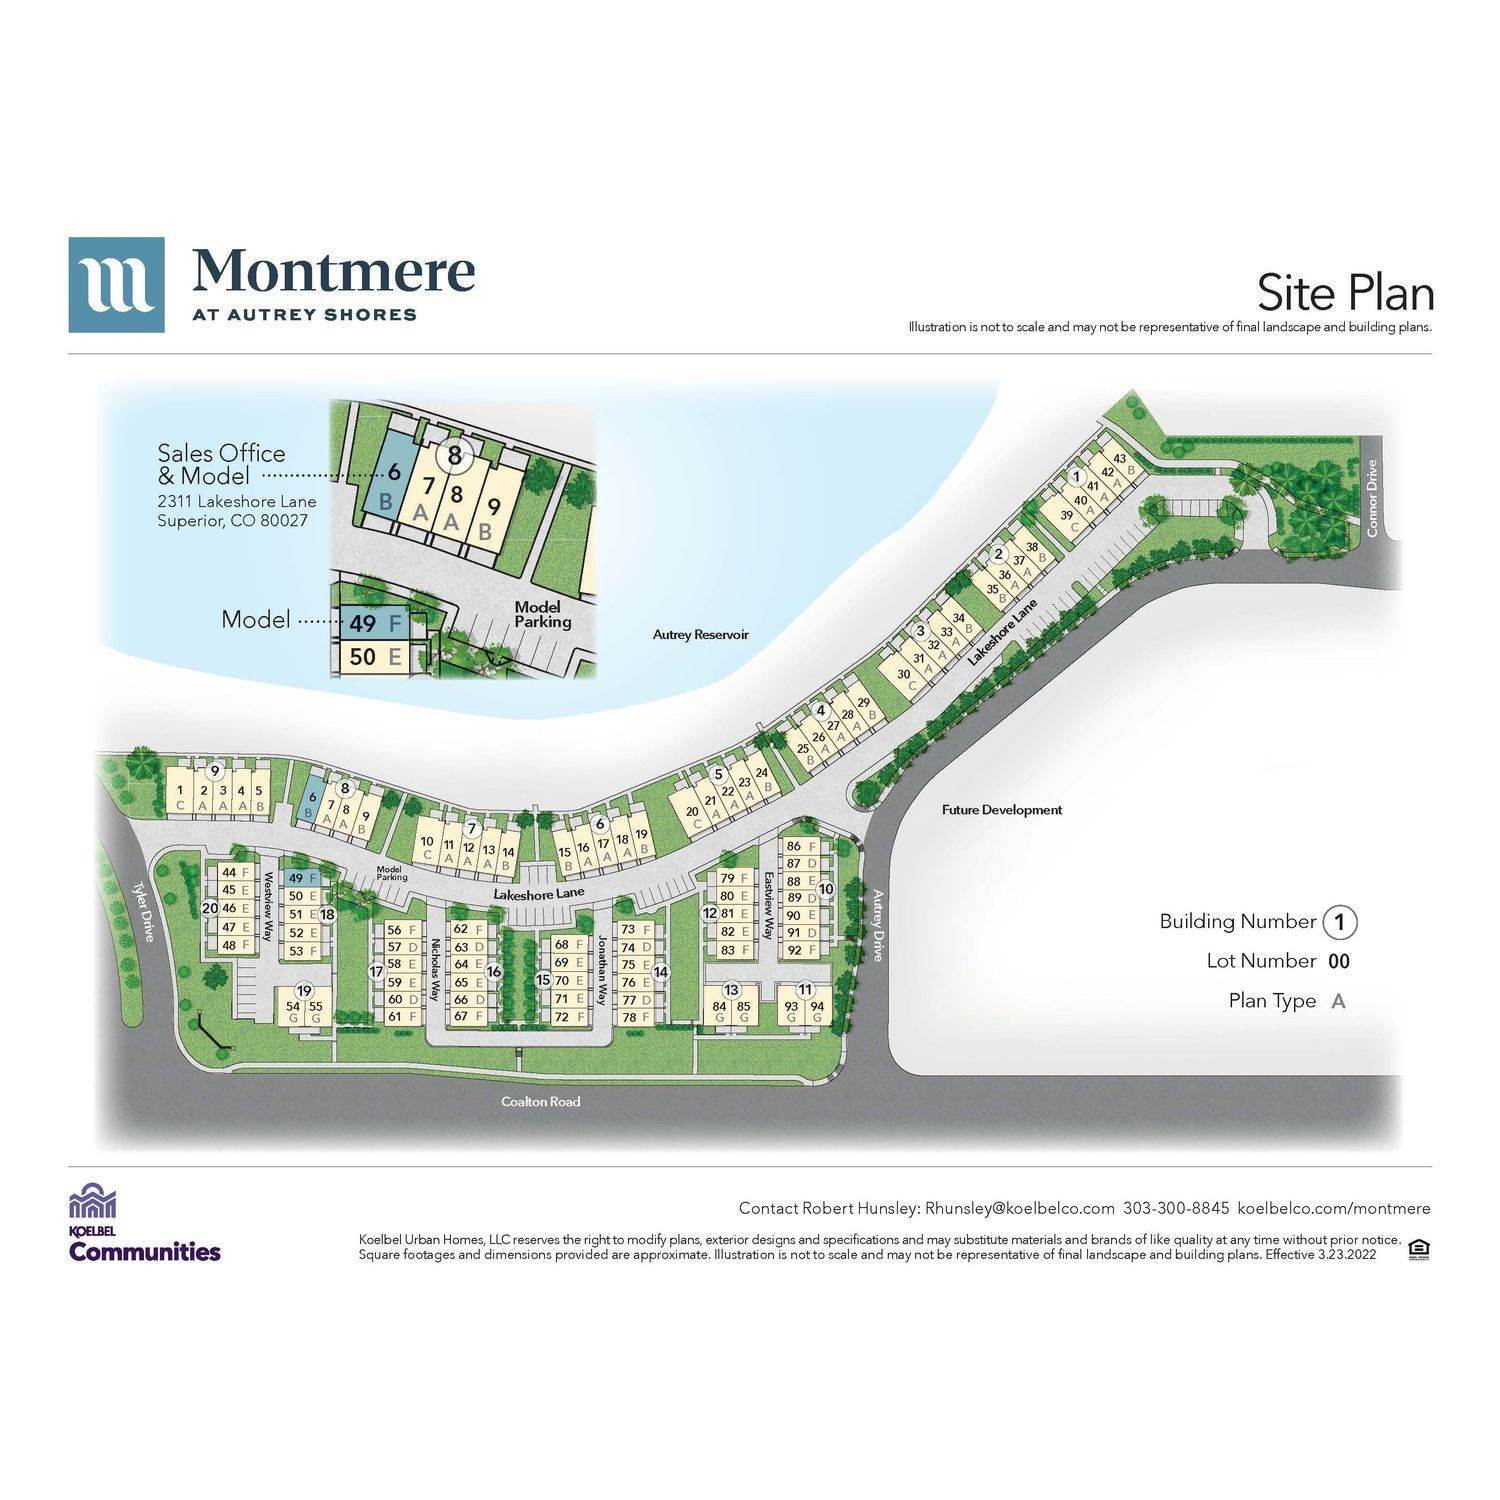 Montmere at Autrey Shores byggnad vid 2311 Lakeshore Lane, Superior, CO 80027